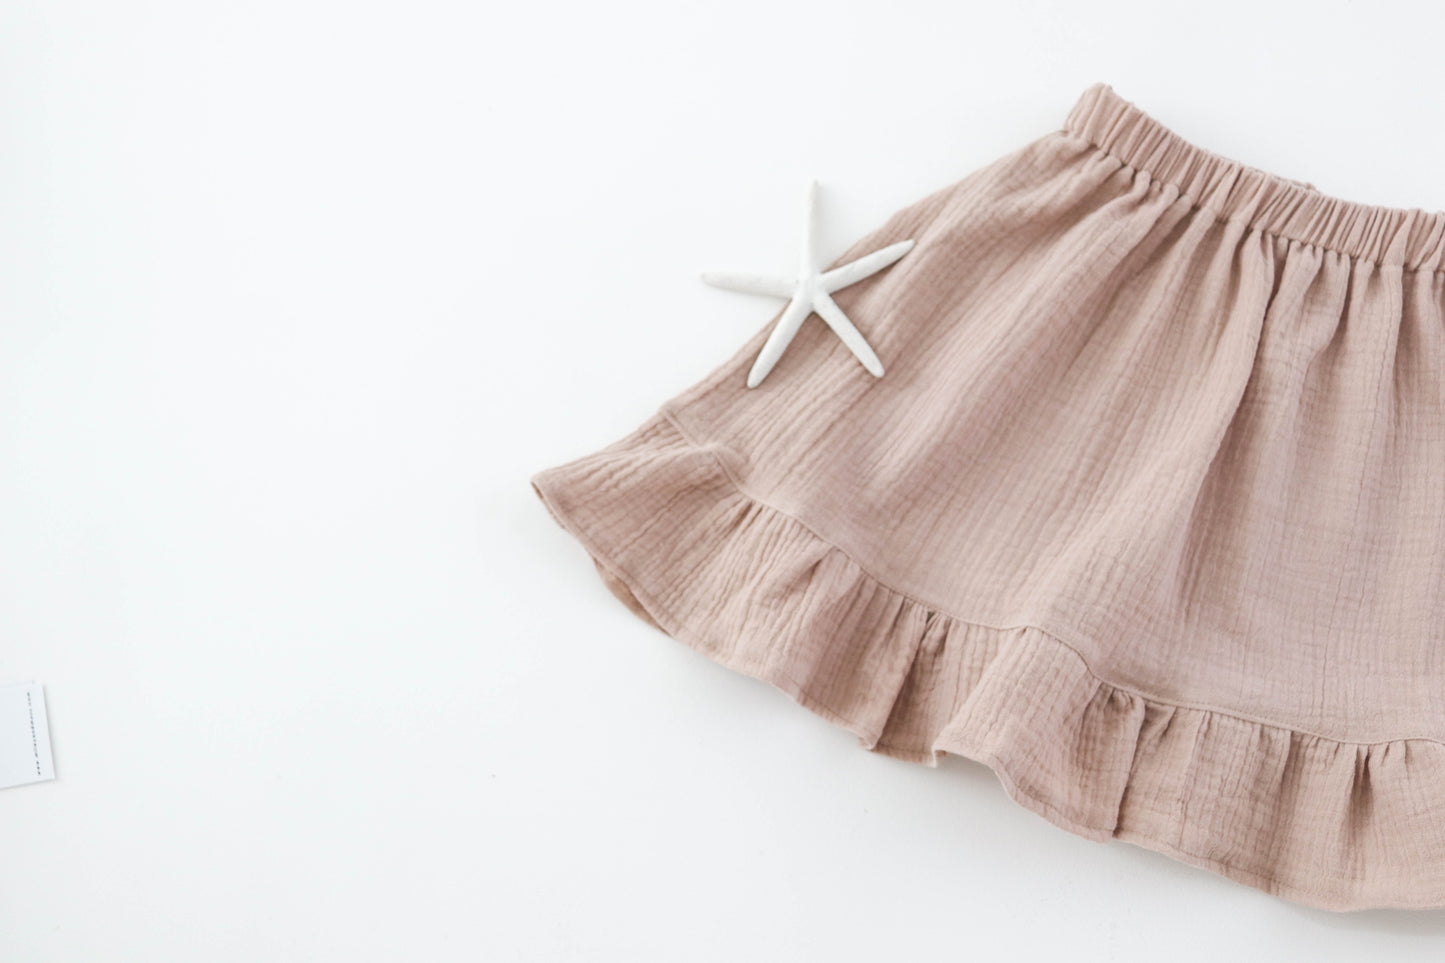 Embroidered/ Muslin skirt